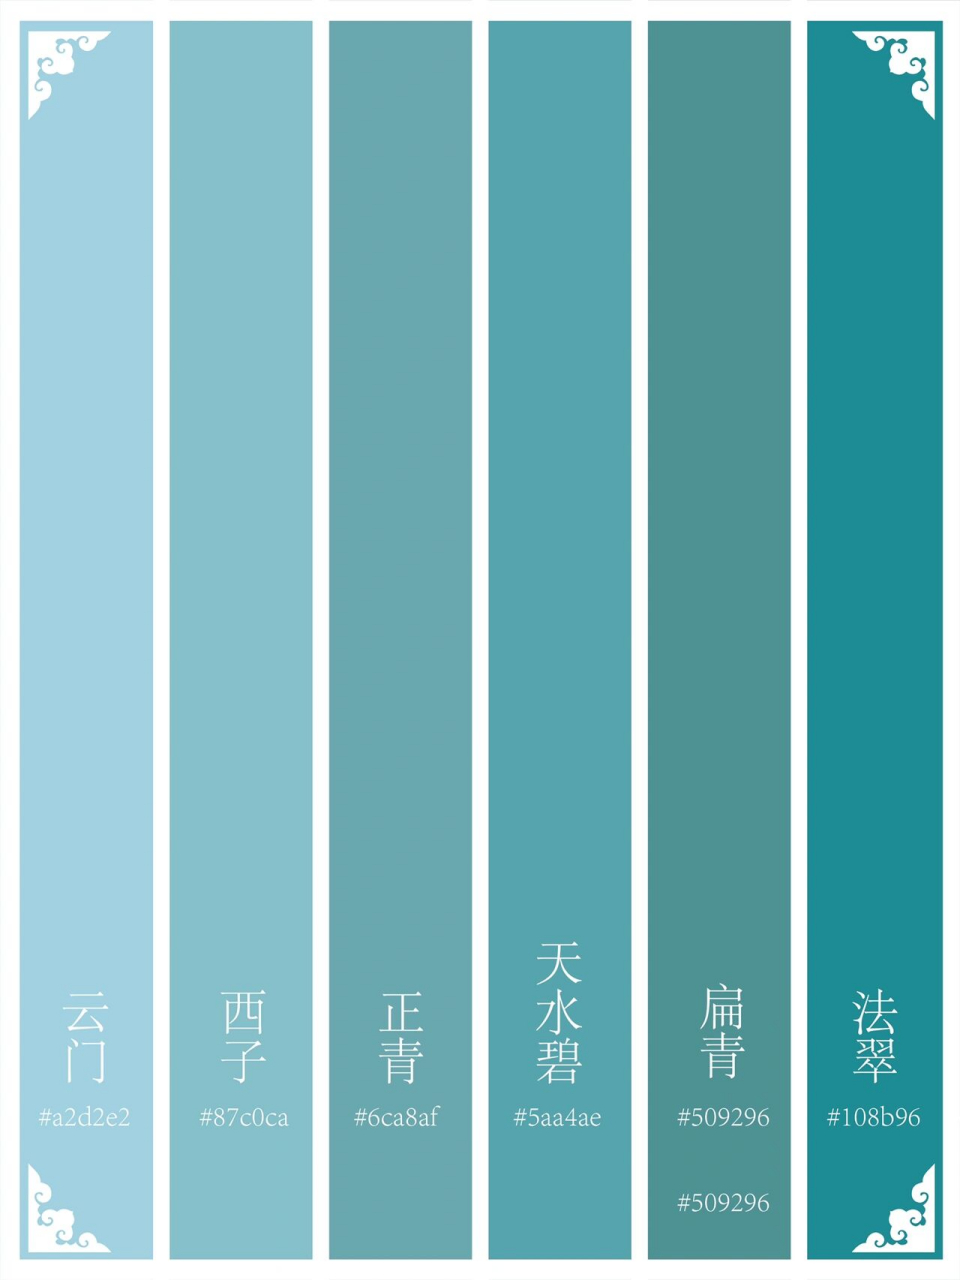 96青色在中国传统色色谱中,是一种游离于绿色和蓝色之间的色彩